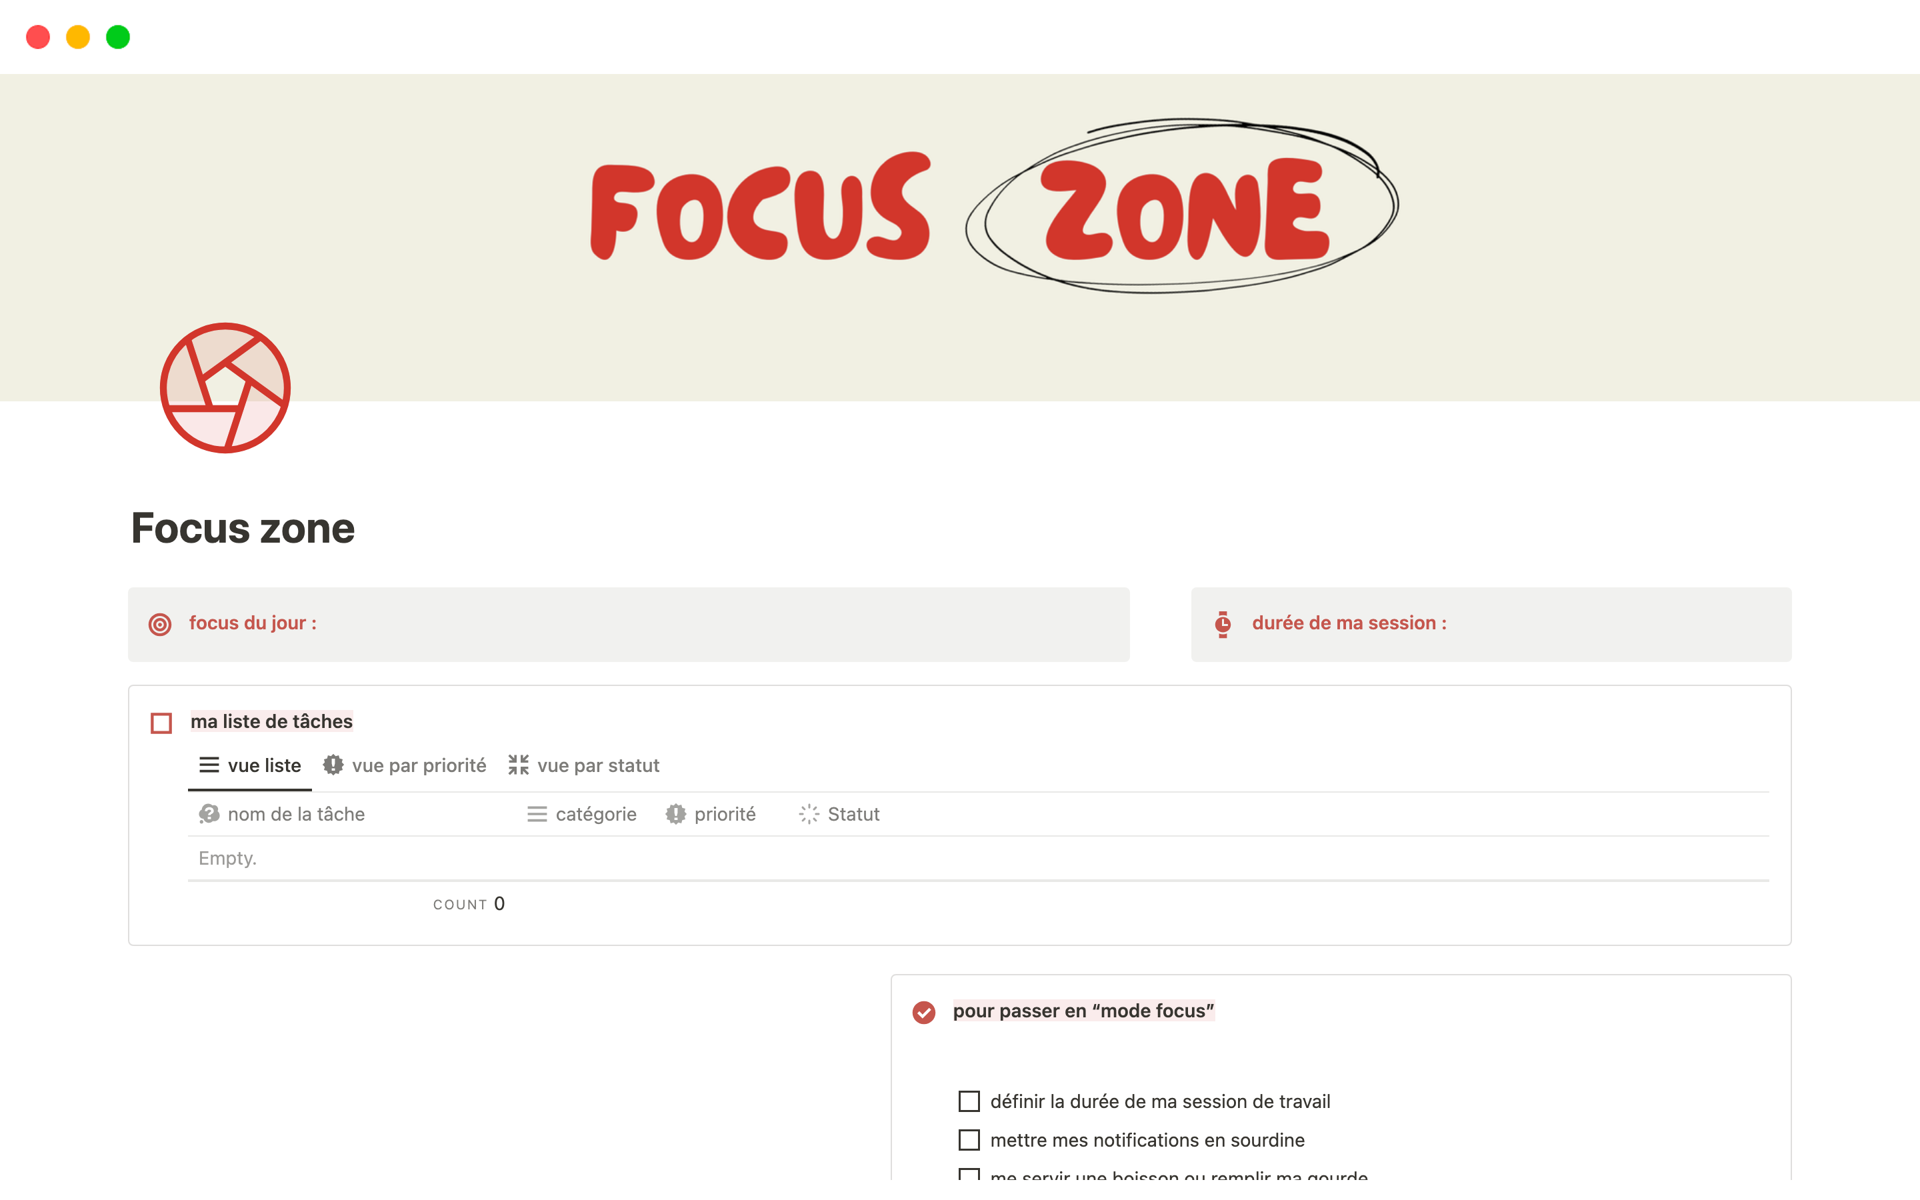 Vista previa de una plantilla para Focus zone